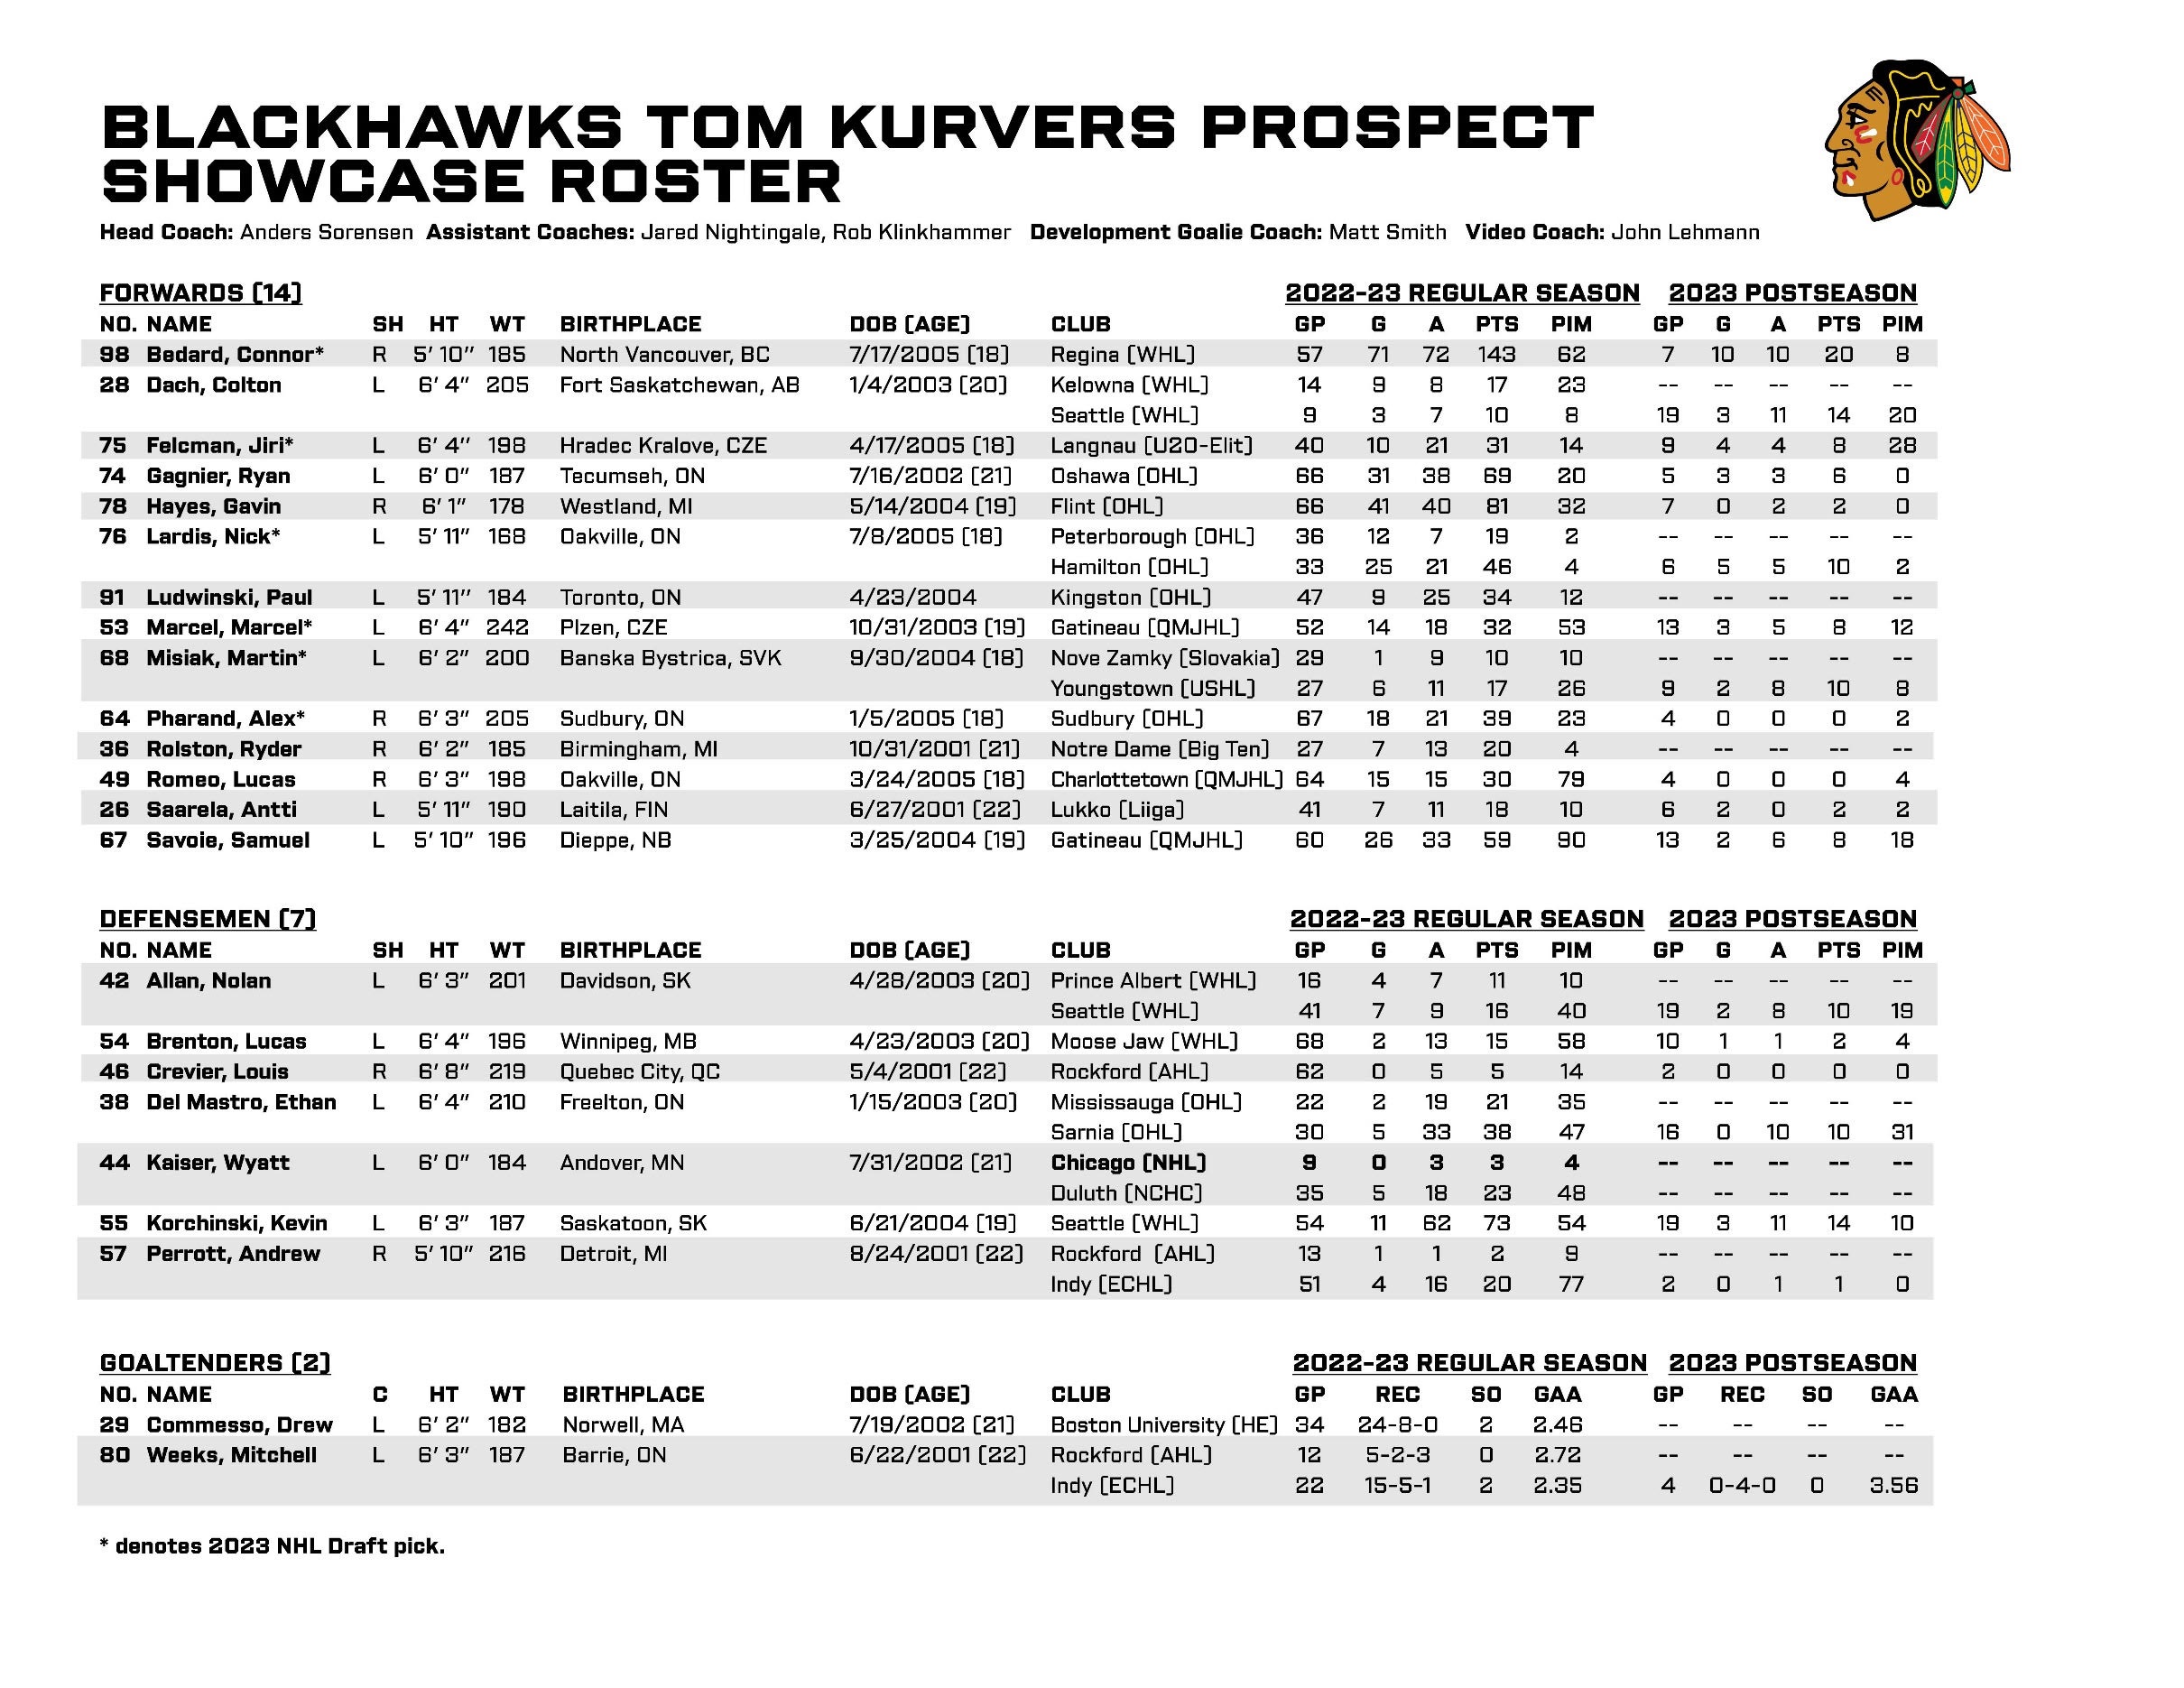 RELEASE: Blackhawks Announce 2023 Tom Kurvers Prospect Showcase